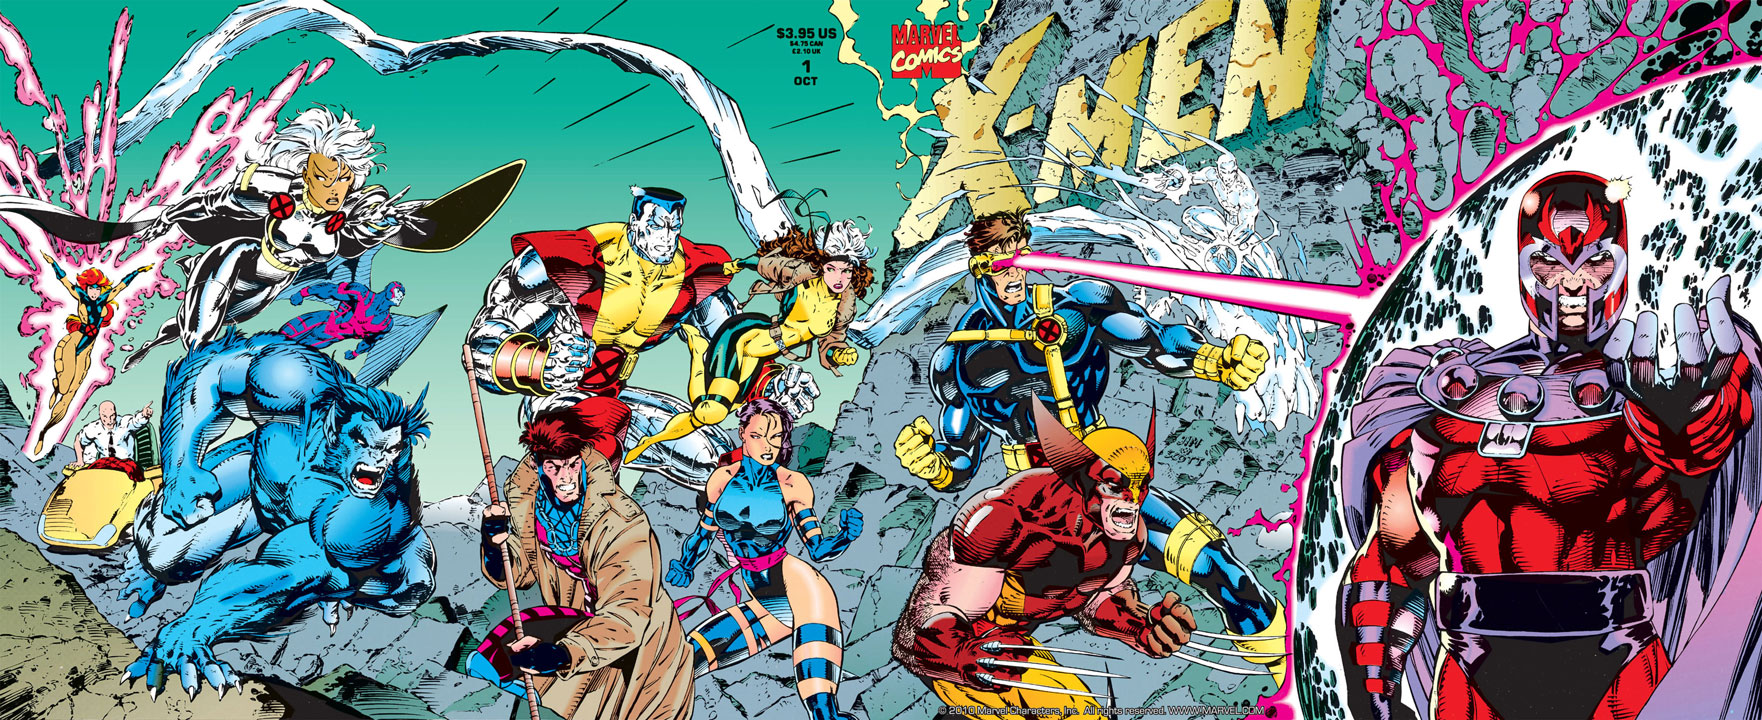 Jim Lee aclara una polémica con su famosa portada de X-Men #1